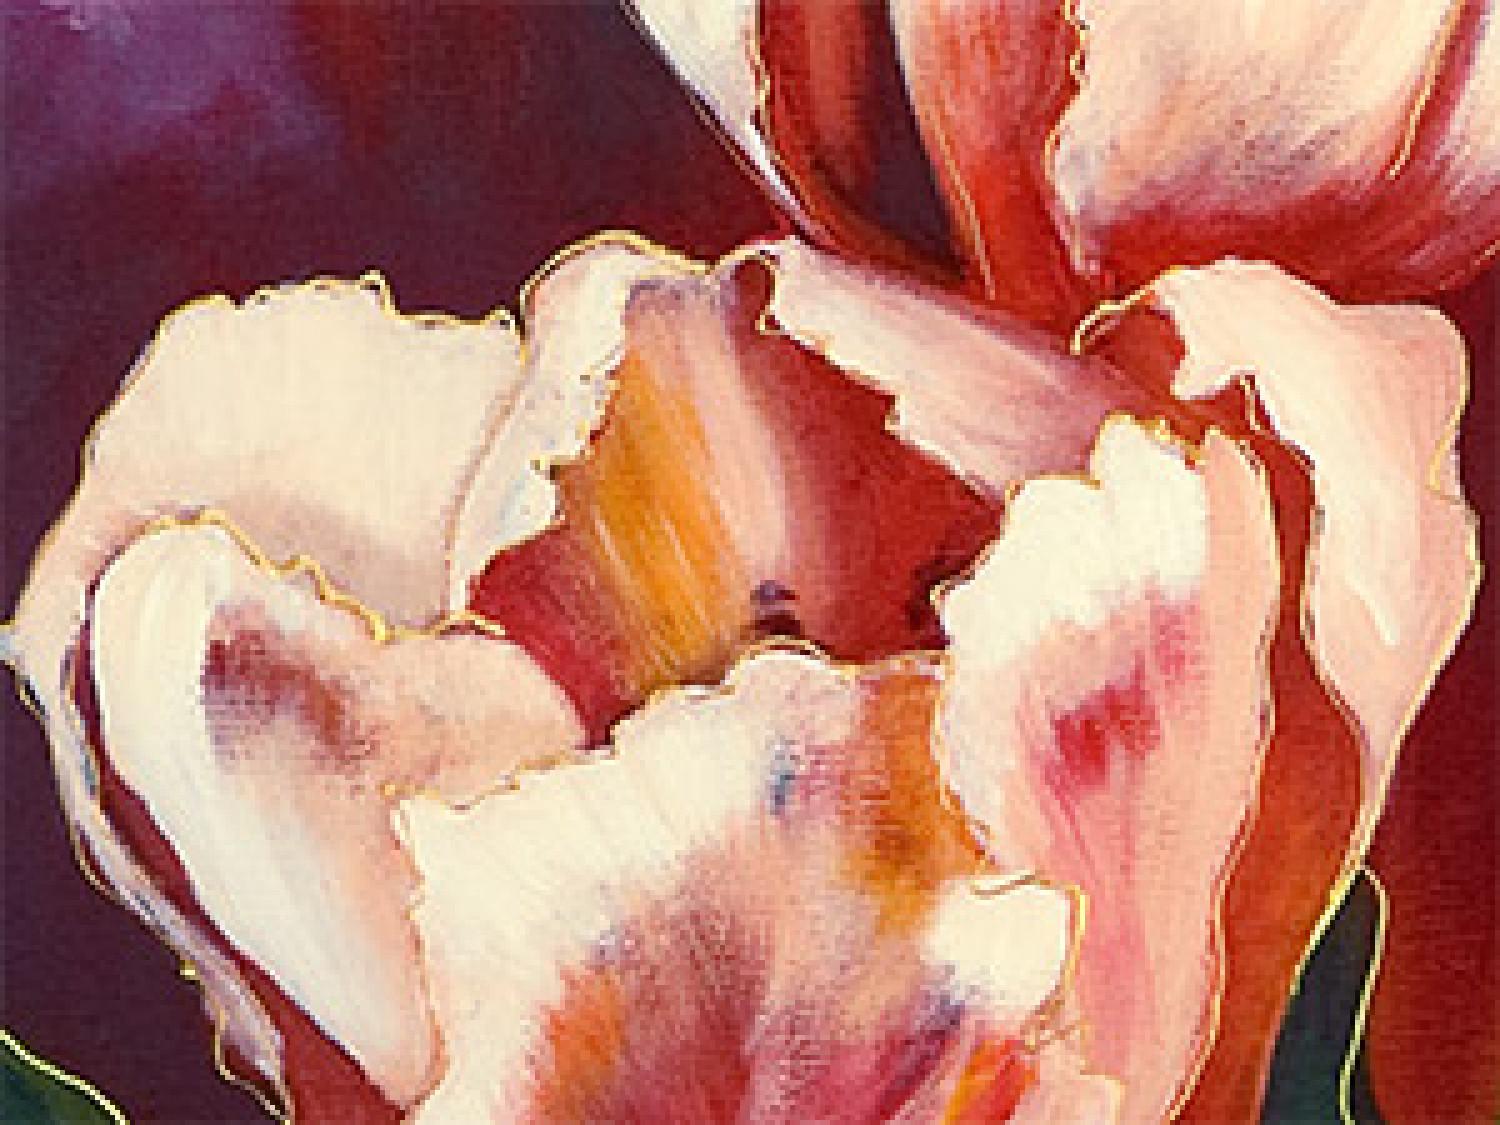 Cuadro Tulipanes románticos (1 pieza) - flores rosas en fondo rojo